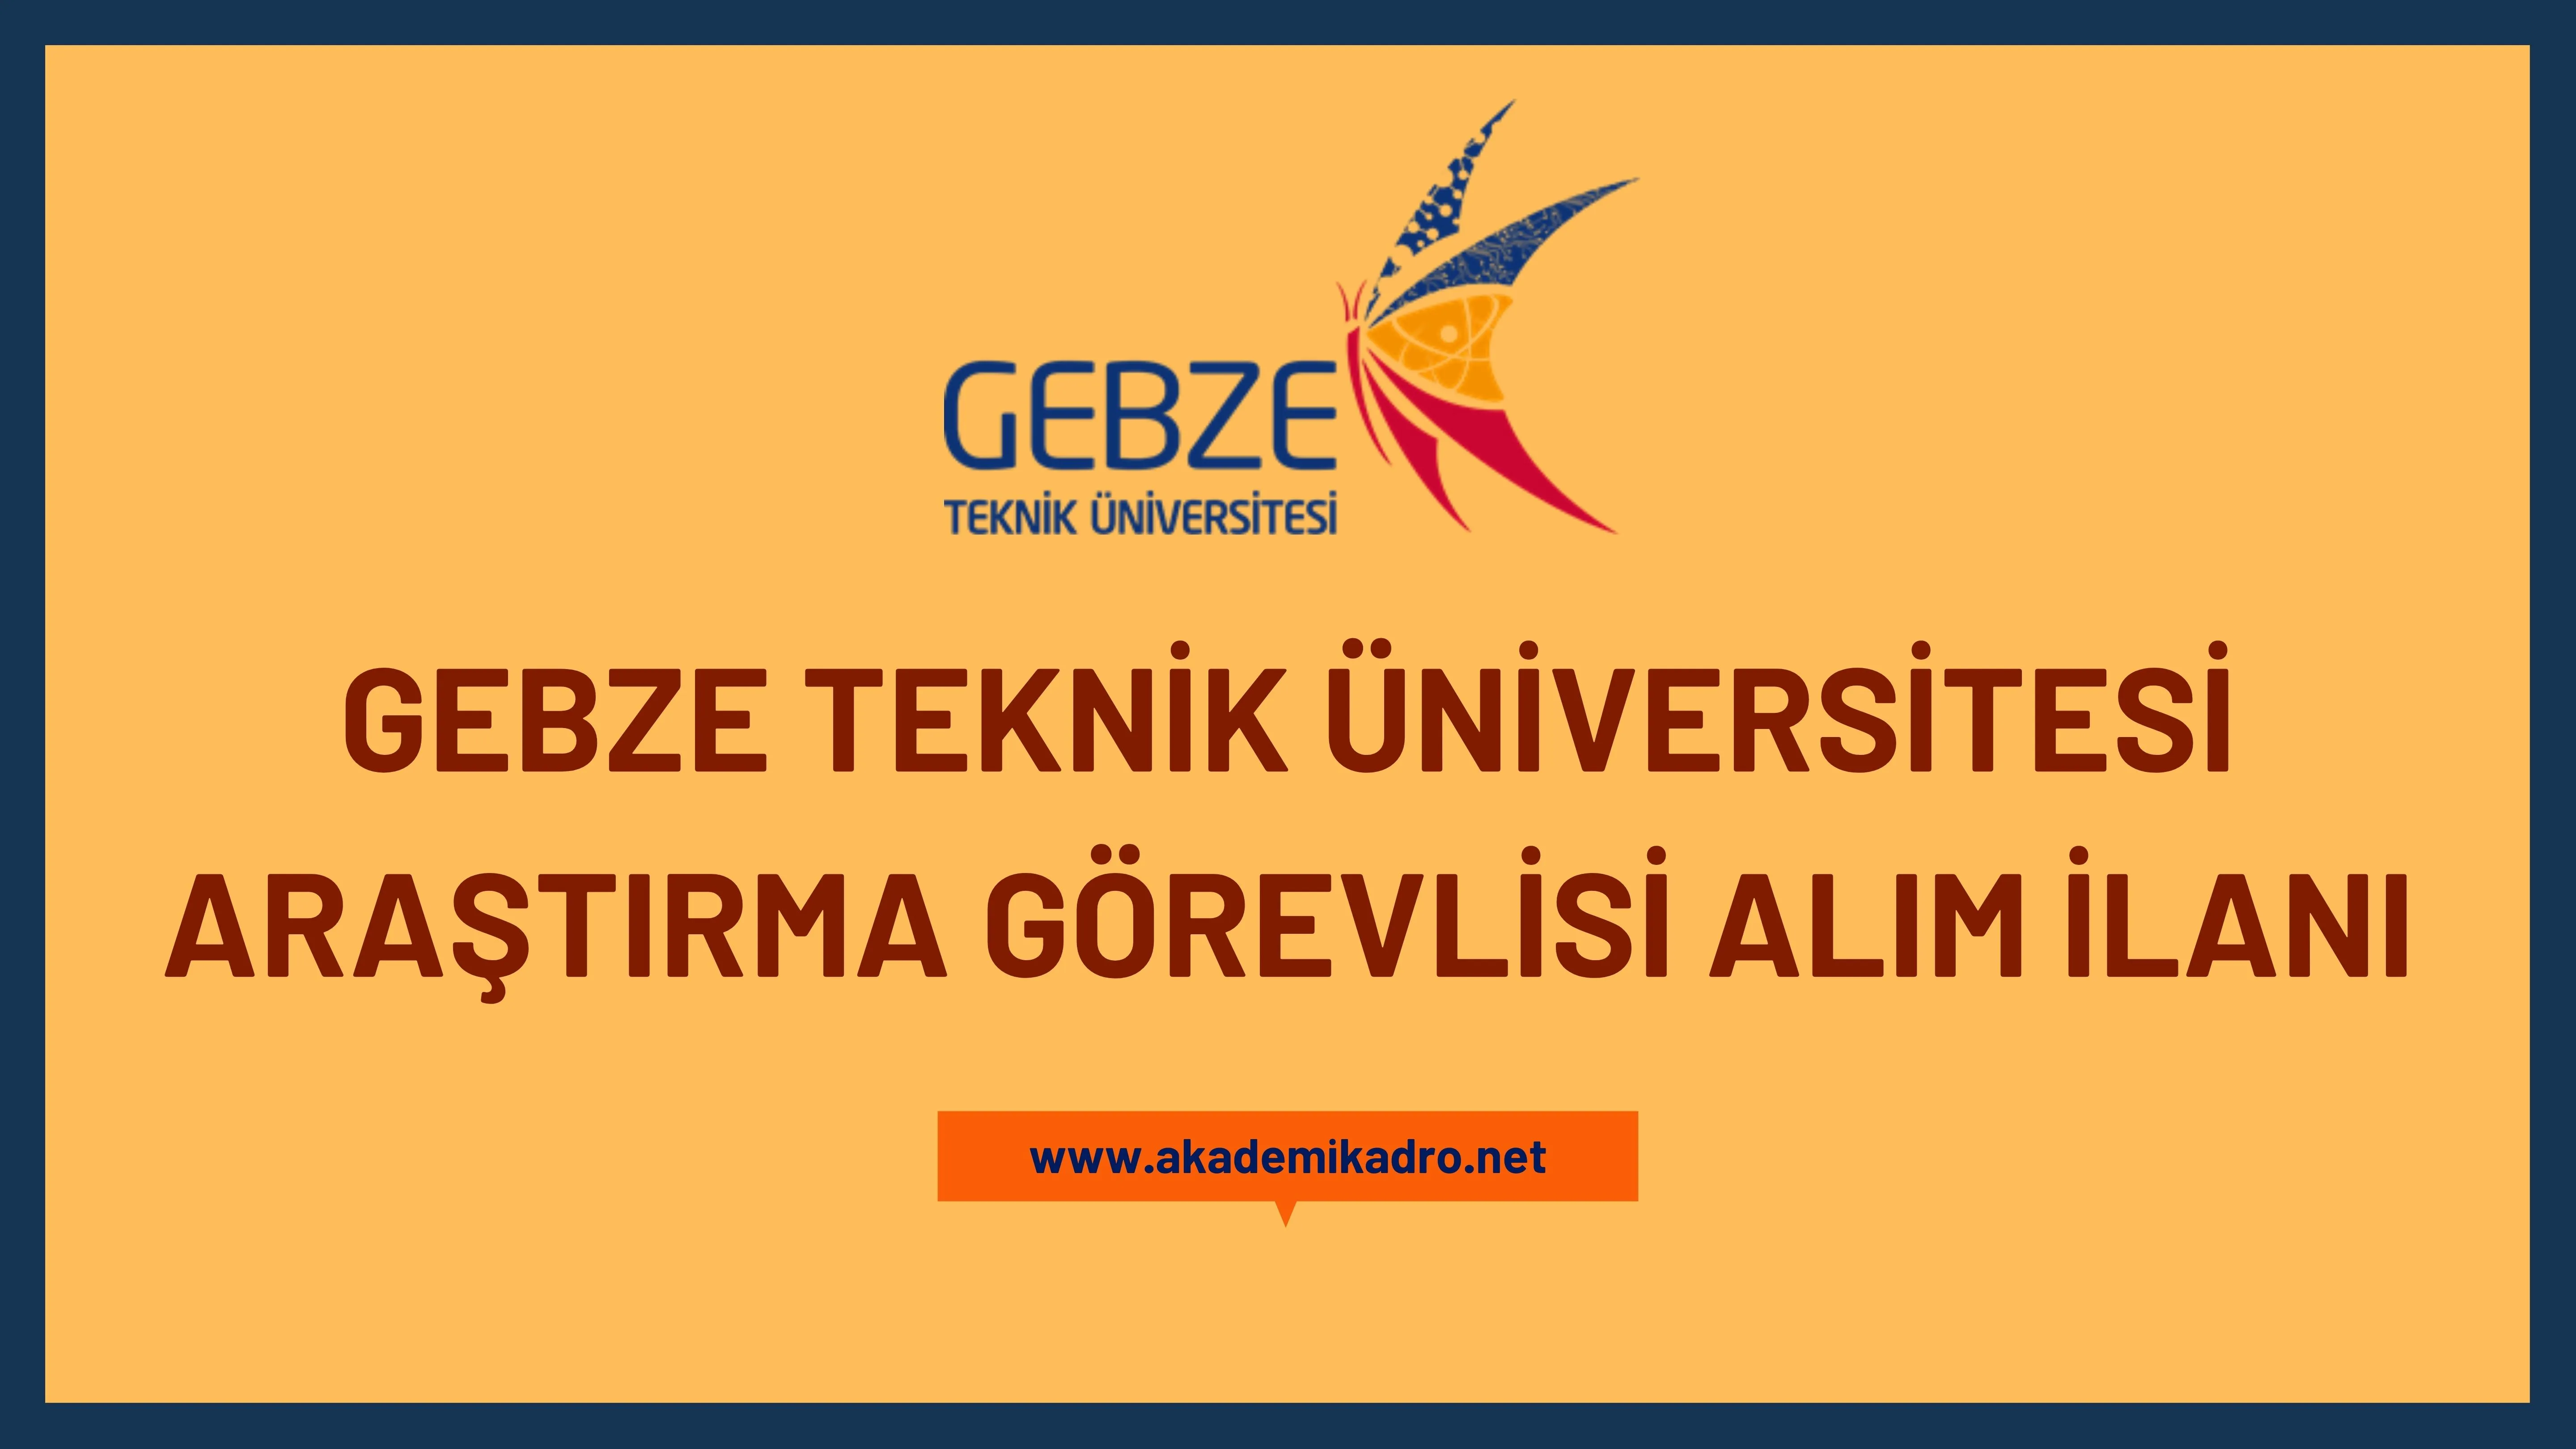 Gebze Teknik Üniversitesi 11 Araştırma Görevlisi alacaktır.